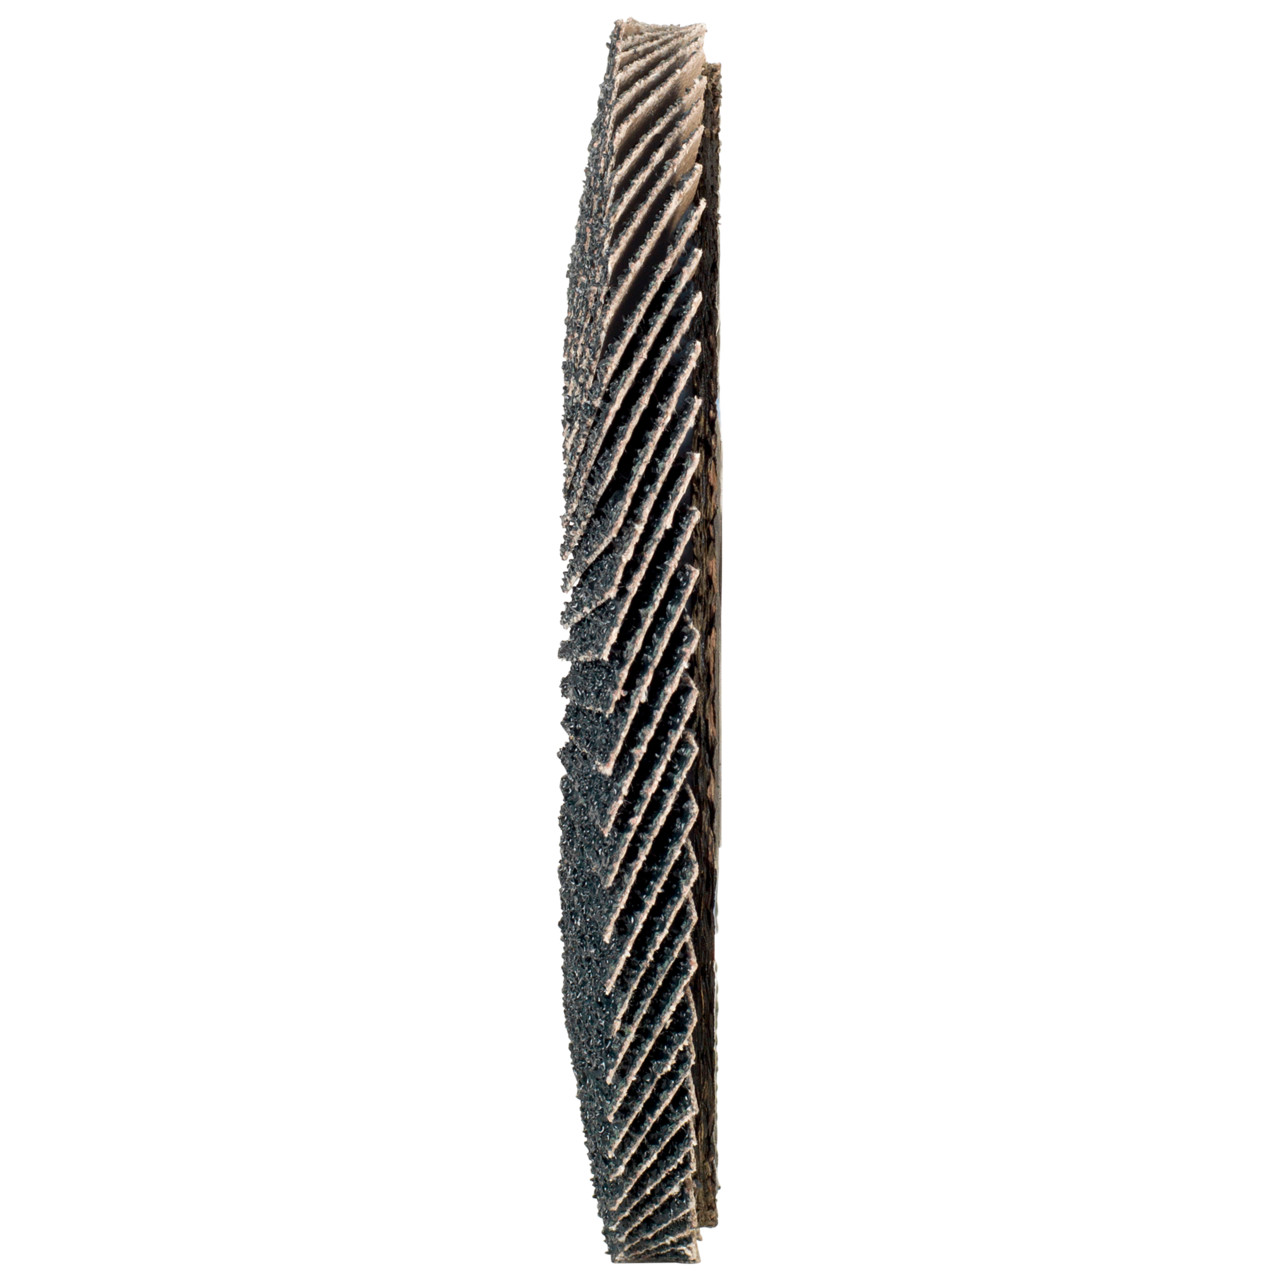 TYROLIT Fächerscheibe DxH 115x22,2 2in1 für Stahl & Edelstahl, P60, Form: 27A - gekröpfte Ausführung (Glasfaserträgerkörperausführung), Art. 668644